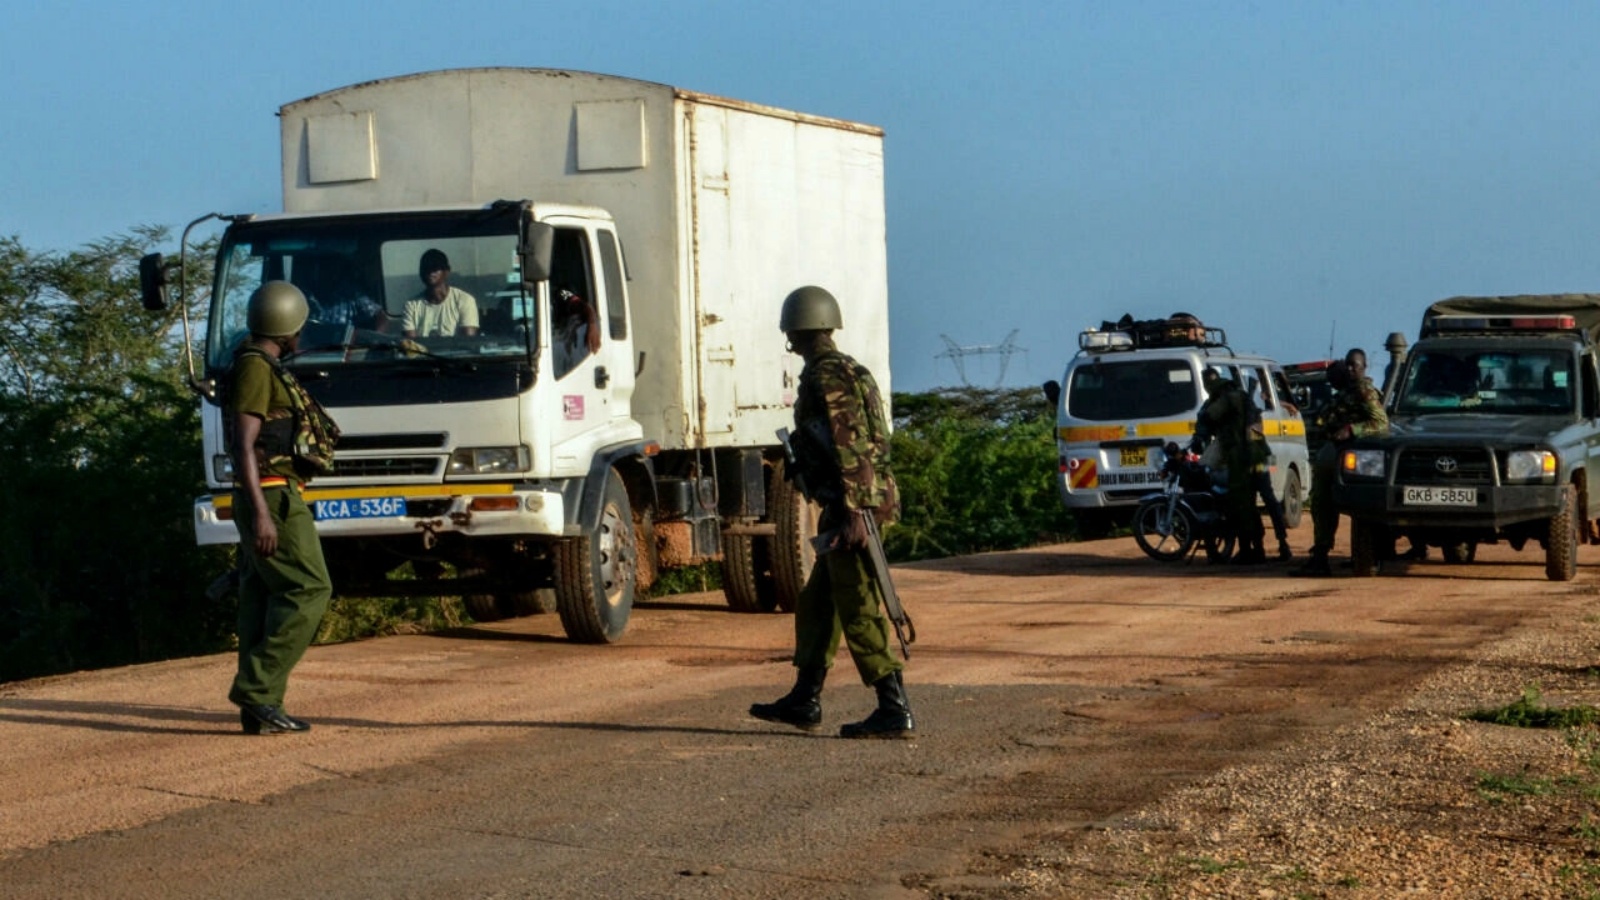 الشرطة الكينية تفتش سيارات بعد هجوم شنه مسلحون في مقاطعة لامو، جنوب شرق البلاد، كانون الثاني/يناير 2020.